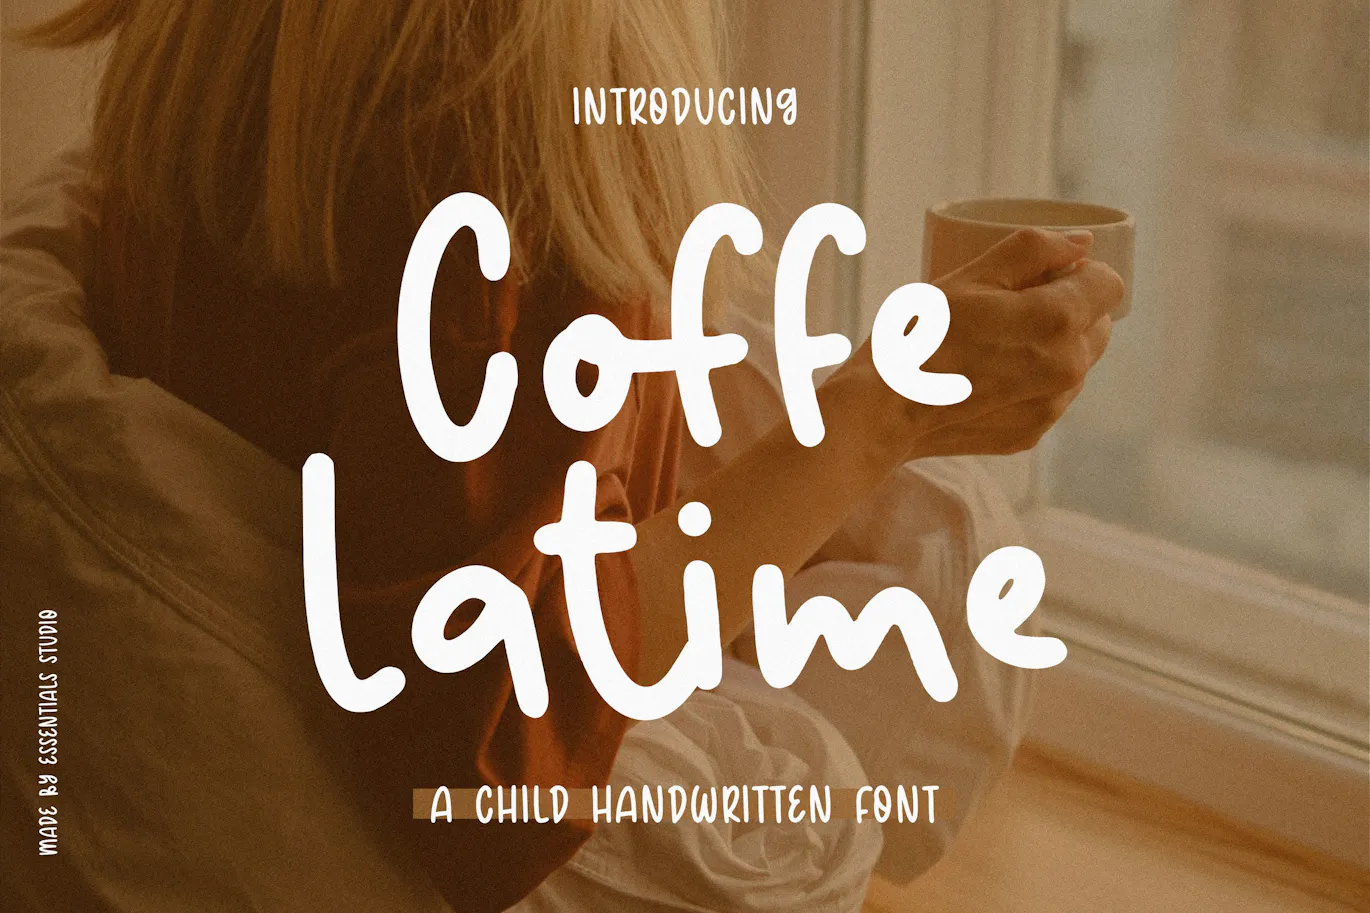 非常适合产品包装的英文字体 - Coffee Latime 设计字体 第1张